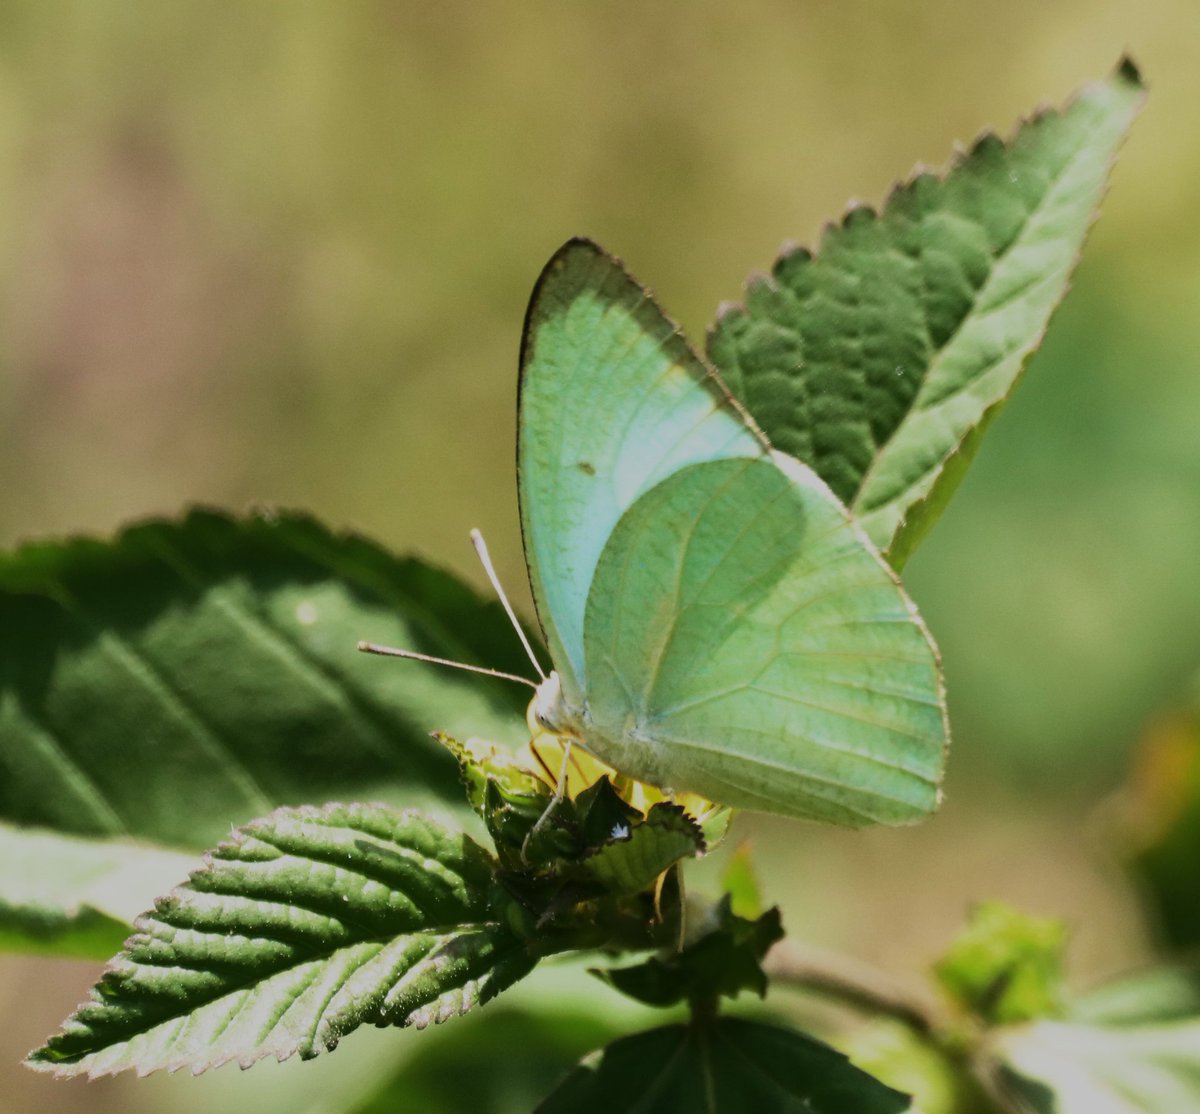 Butterfly.

#titlituesday 
#IndiAves
#IndiAves #bbcwildlife  #indianwildlife #naturephotography